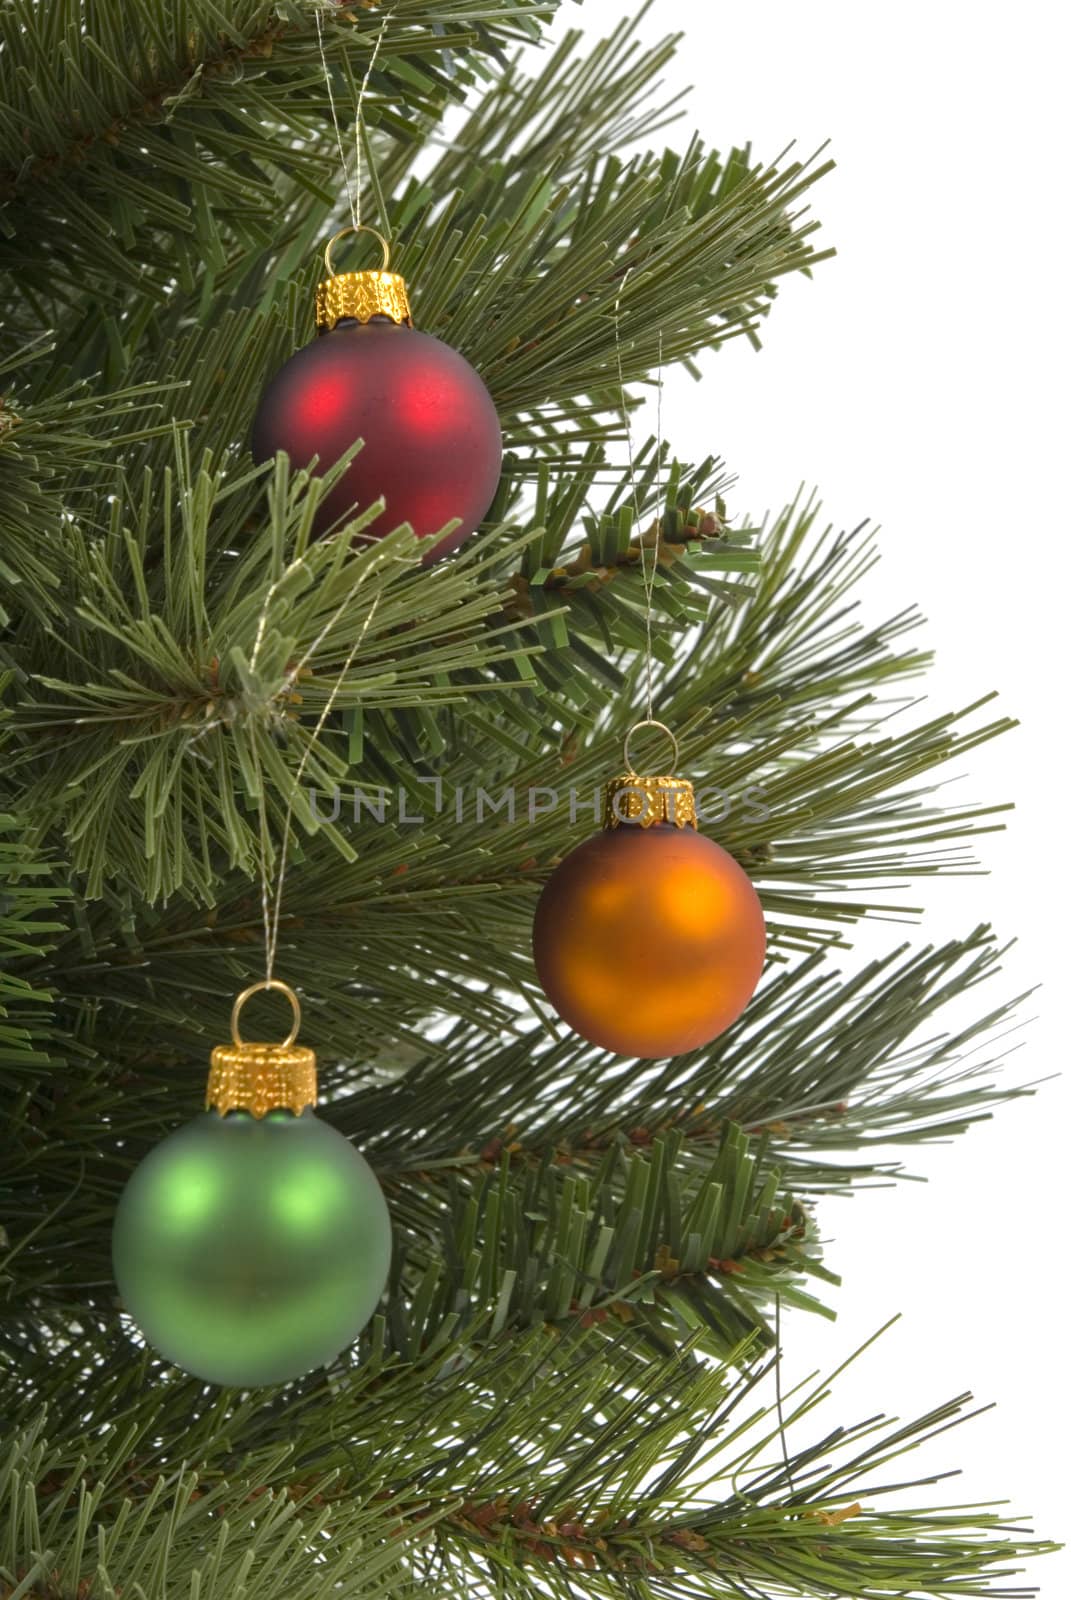 Colorful Christmas ornaments on Christmas tree